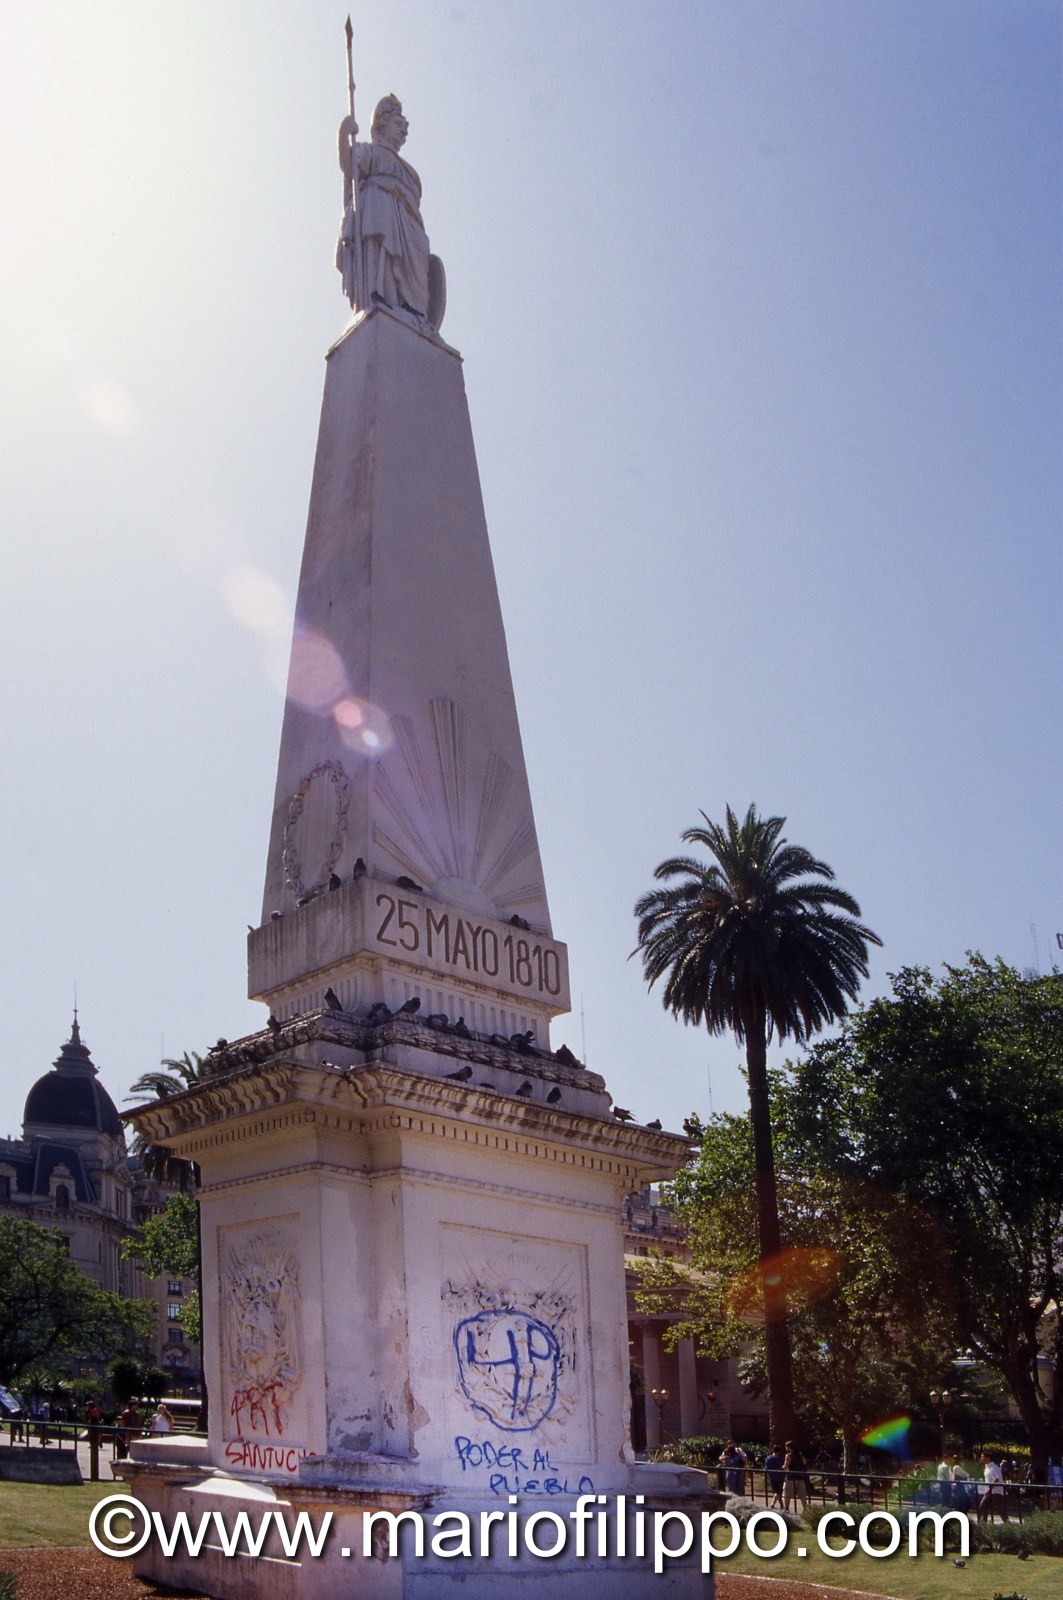 ARGENTINA BUOENOS AIRES 25 MAYO 1810 - MOMUMENTE RIVOLUZIONE PLAZA 25 MAYO 1810